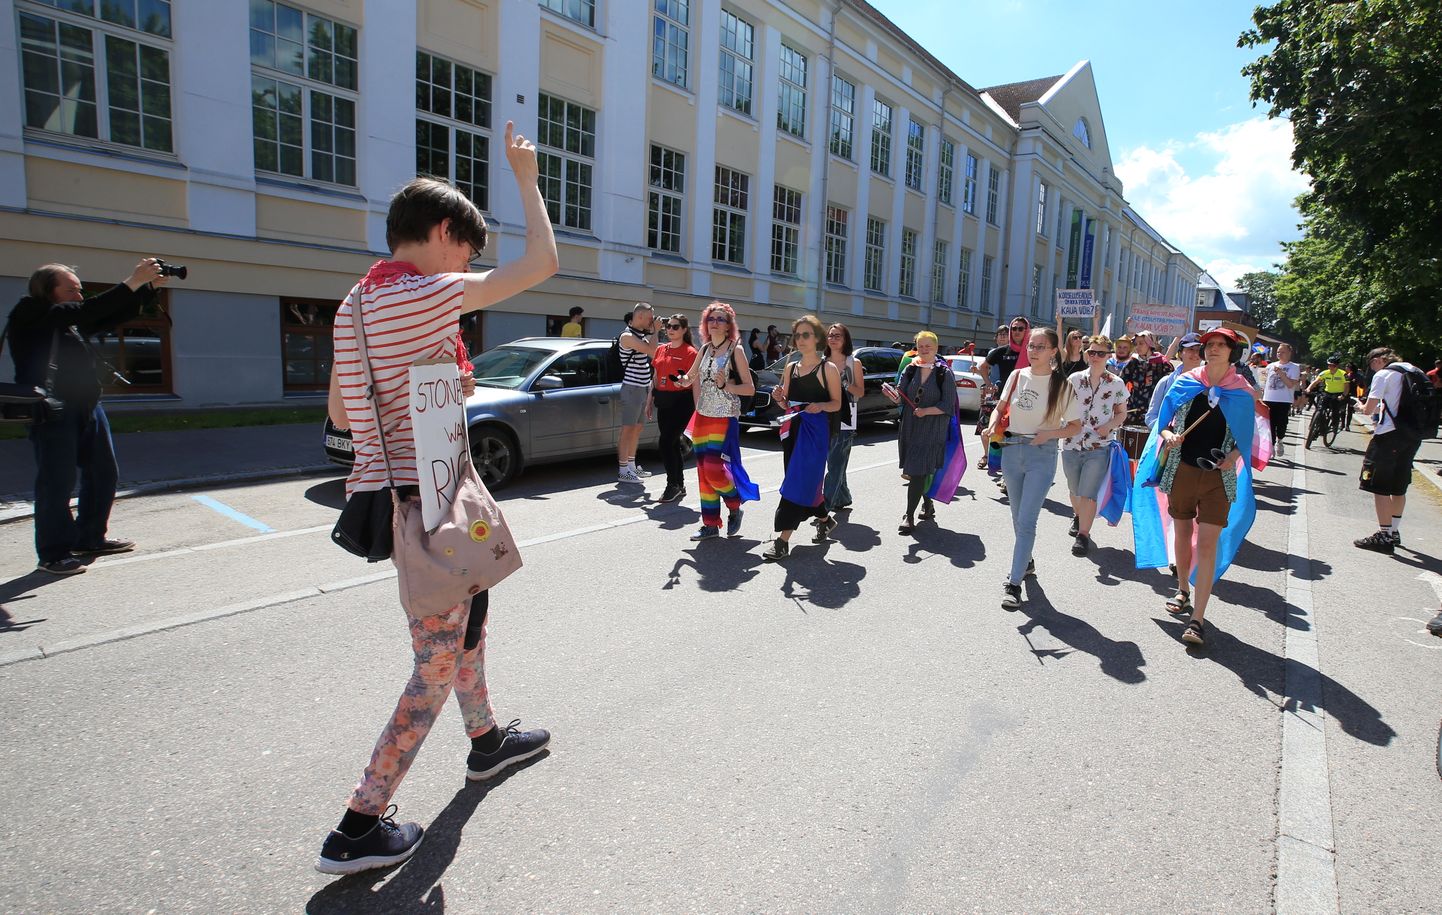 Tartu Pride'i rongkäik sai alguse Vanemuise pargist. Rongkäiku saatis turvameeskond ning sündmust jälgis ka abipolitseinike jalgrattapatrull(paremal taga.